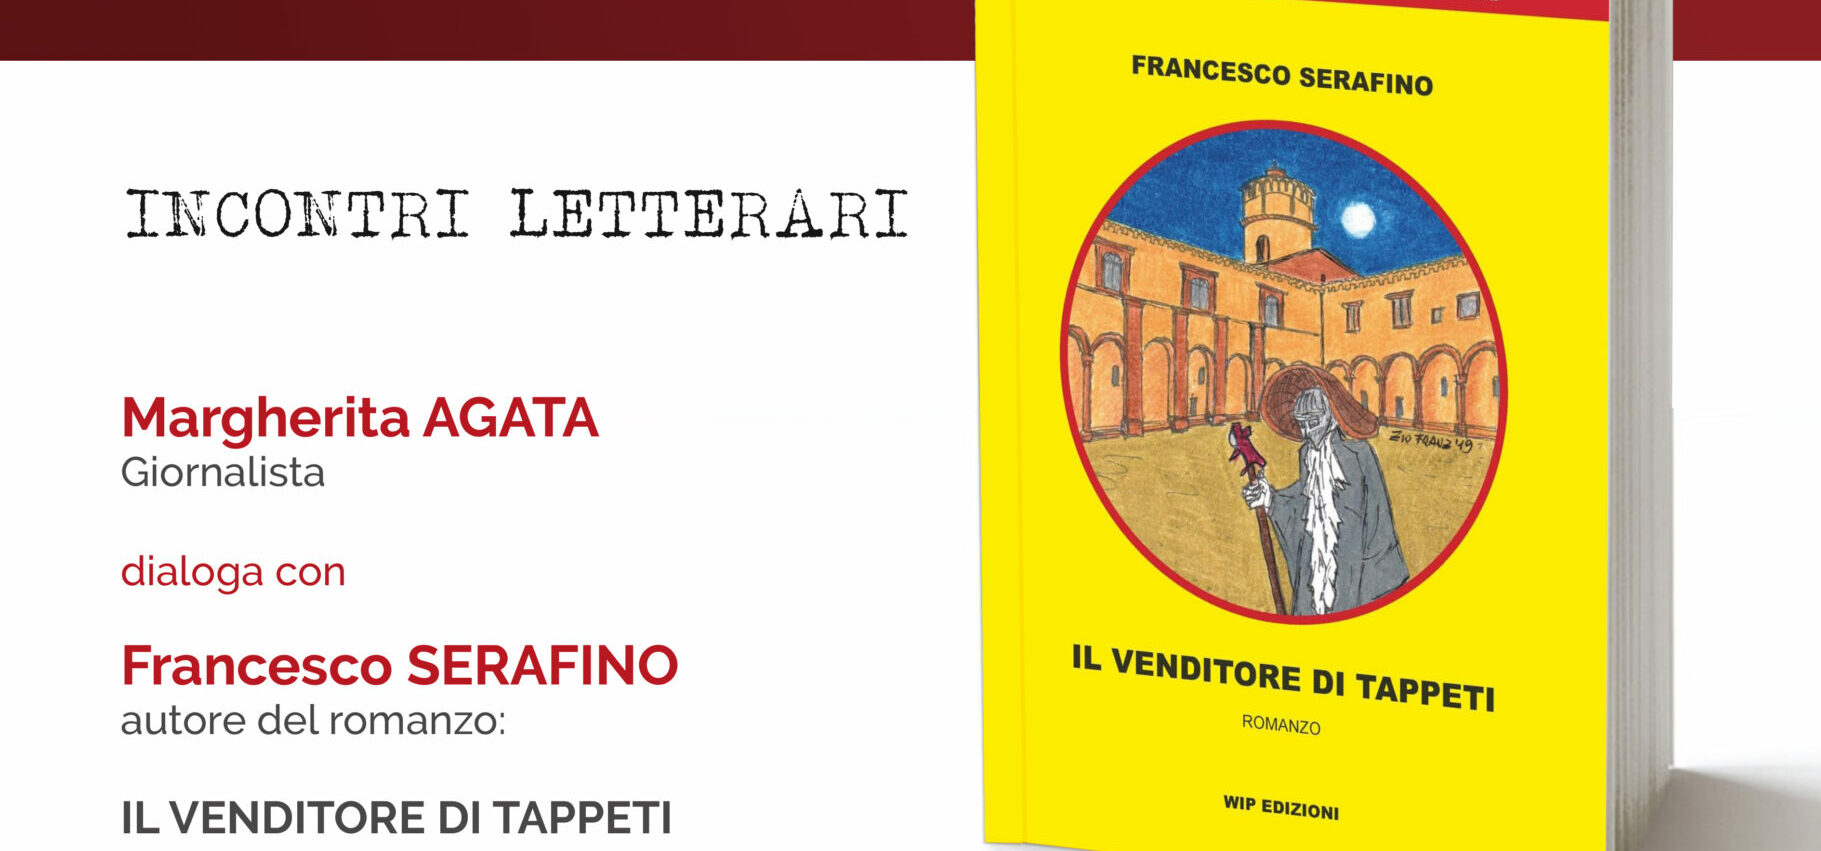 Ferrandina, il 5 per “Libri in Comune” Francesco Serafino presenta “Il venditore di tappeti”